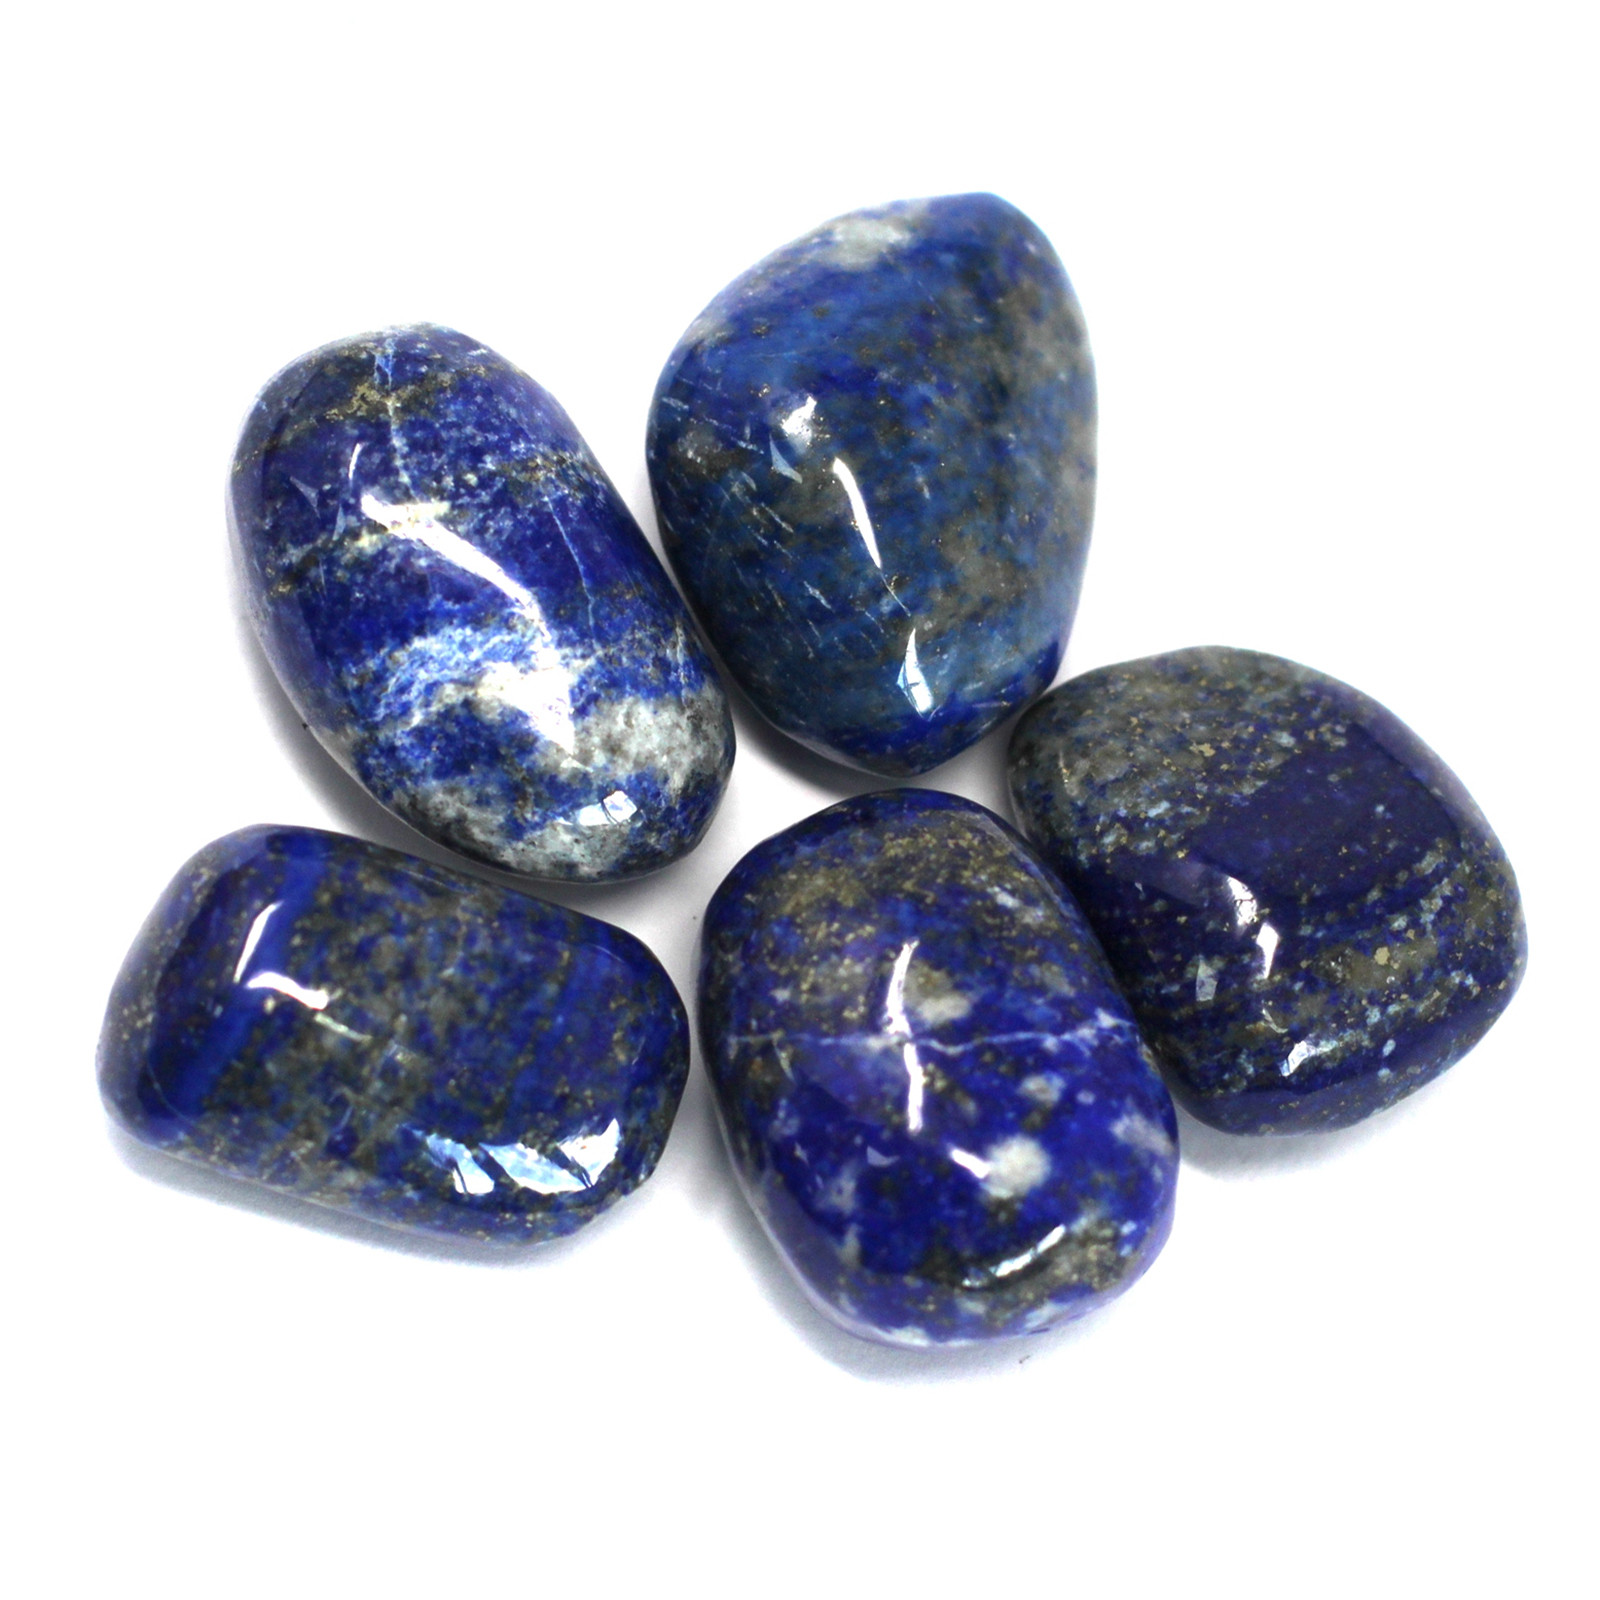 4 x Premium Tumble Stones - Lapis